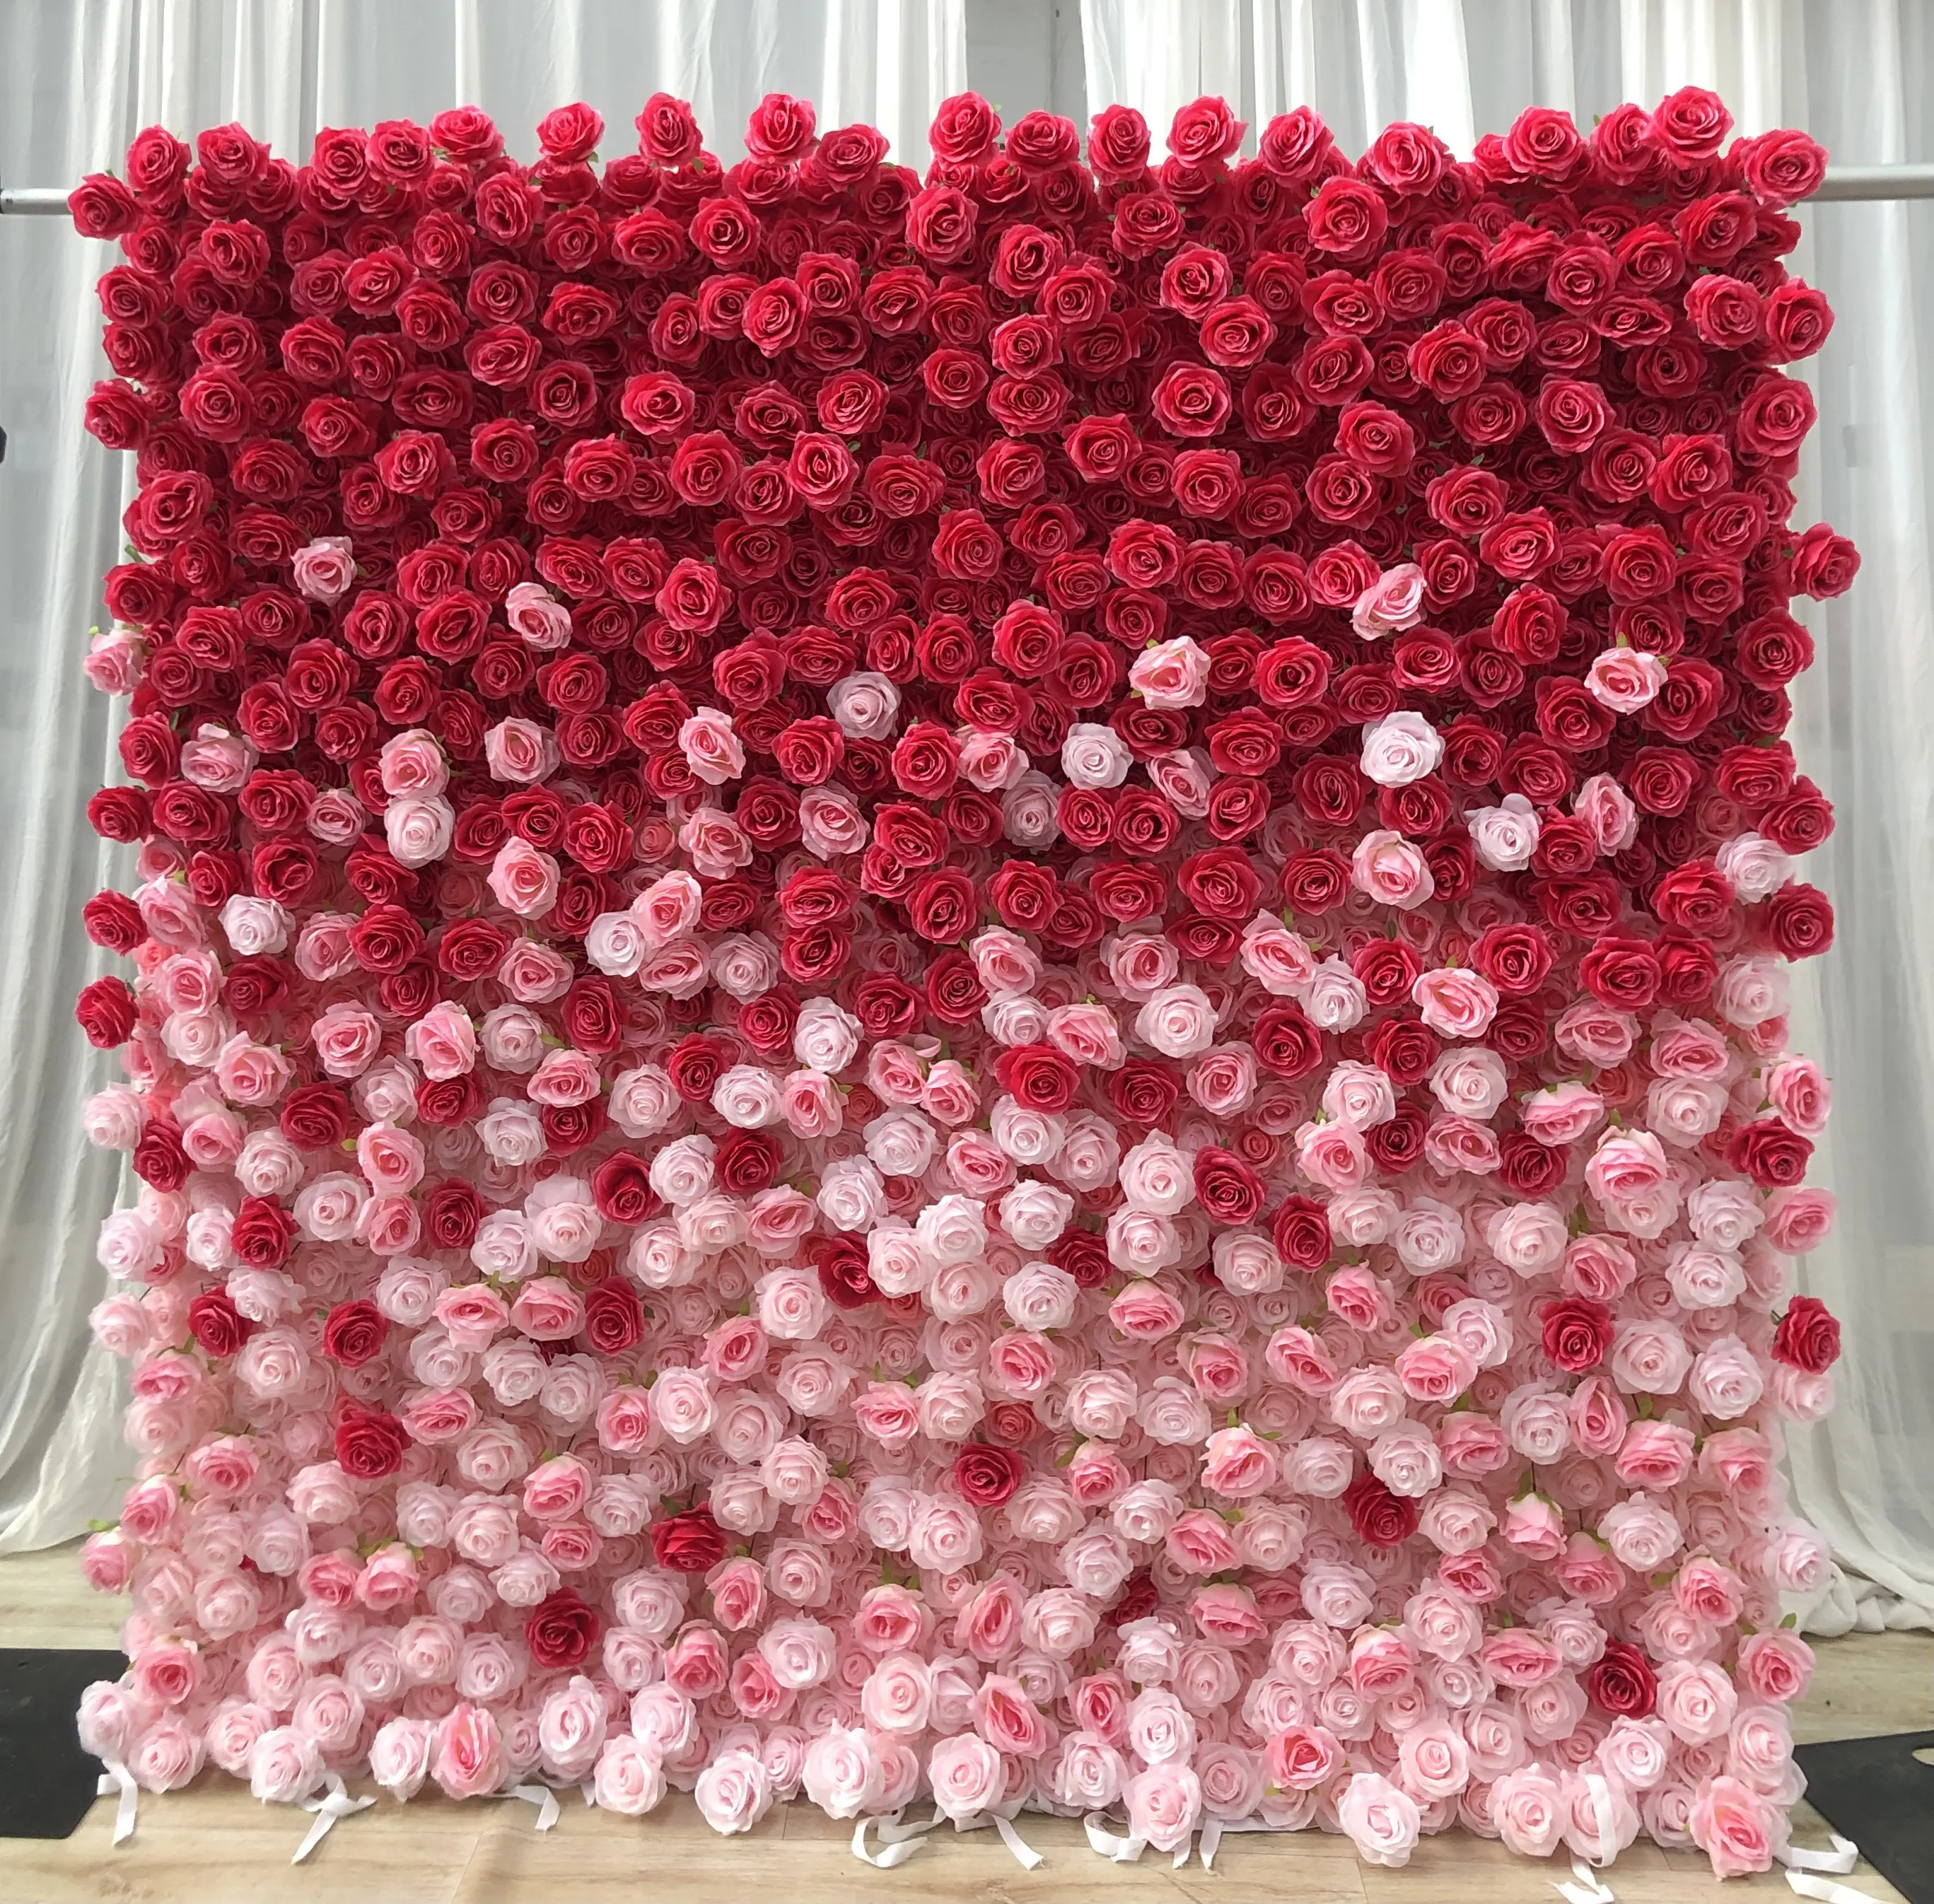 O-W024 usine fabricant tissu tissu fleur mur 5D douane fleur blanche panneaux muraux enrouler fleur mur toile de fond 8ft x 8ft